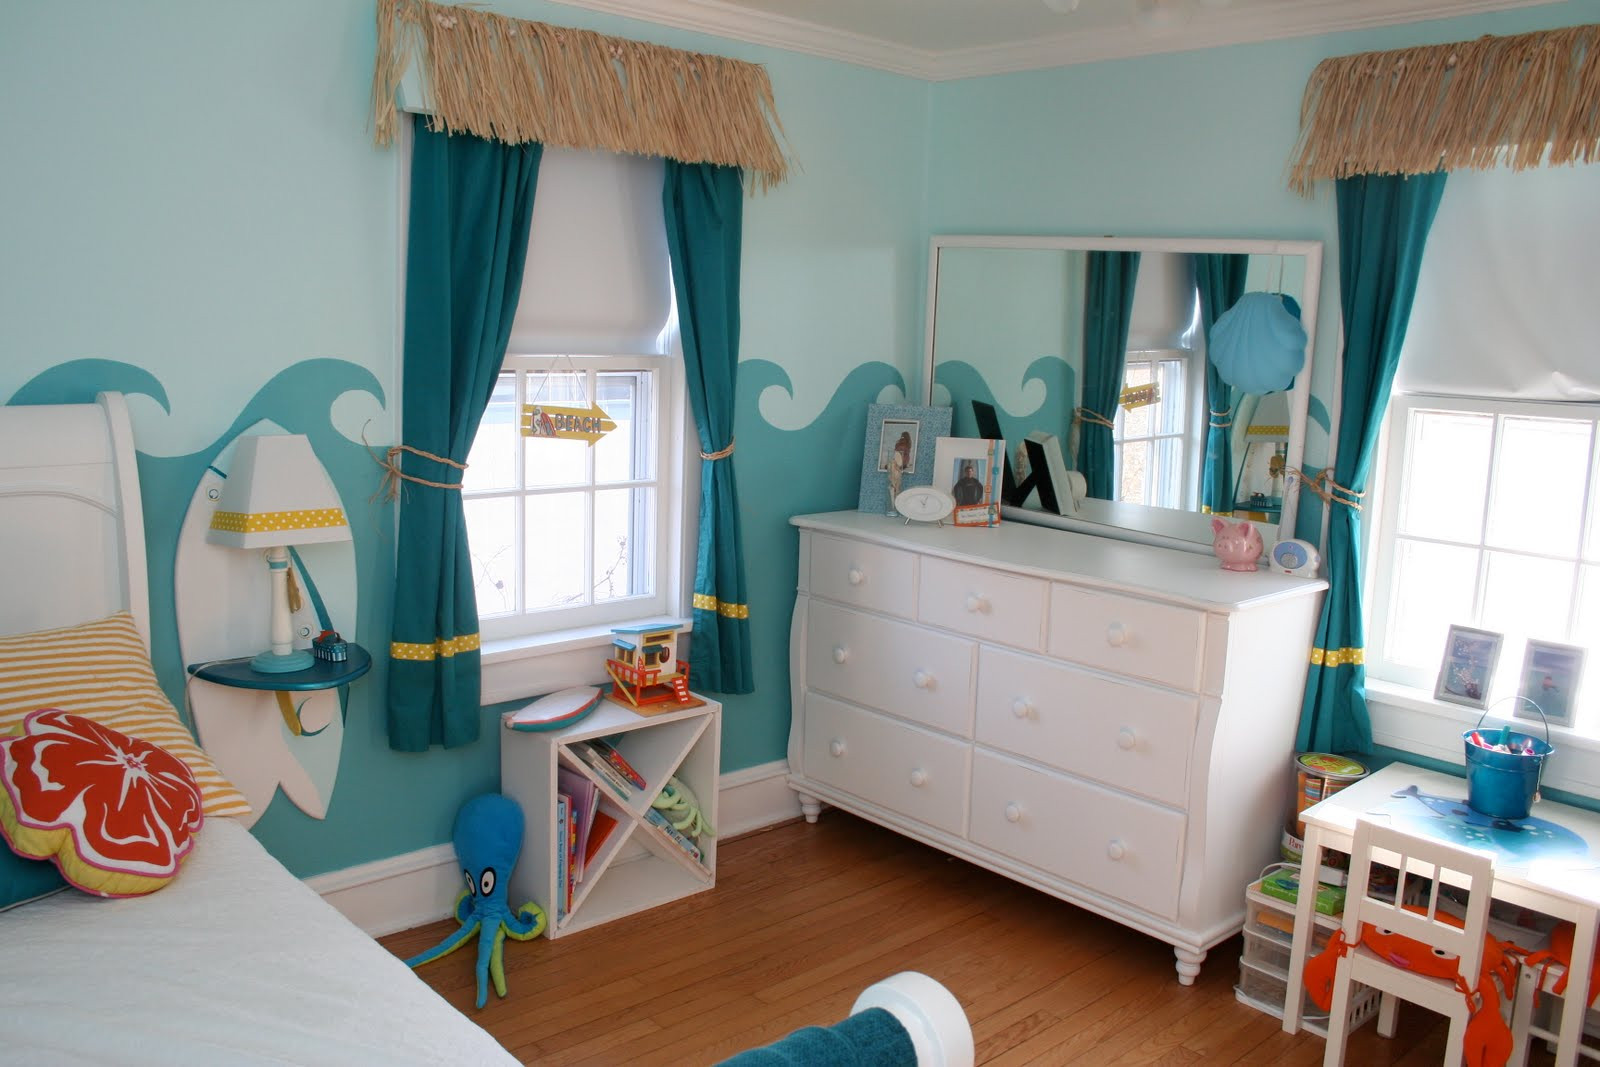 Surf Bedroom Decor
 Little Girl s Surfer Room Design Dazzle